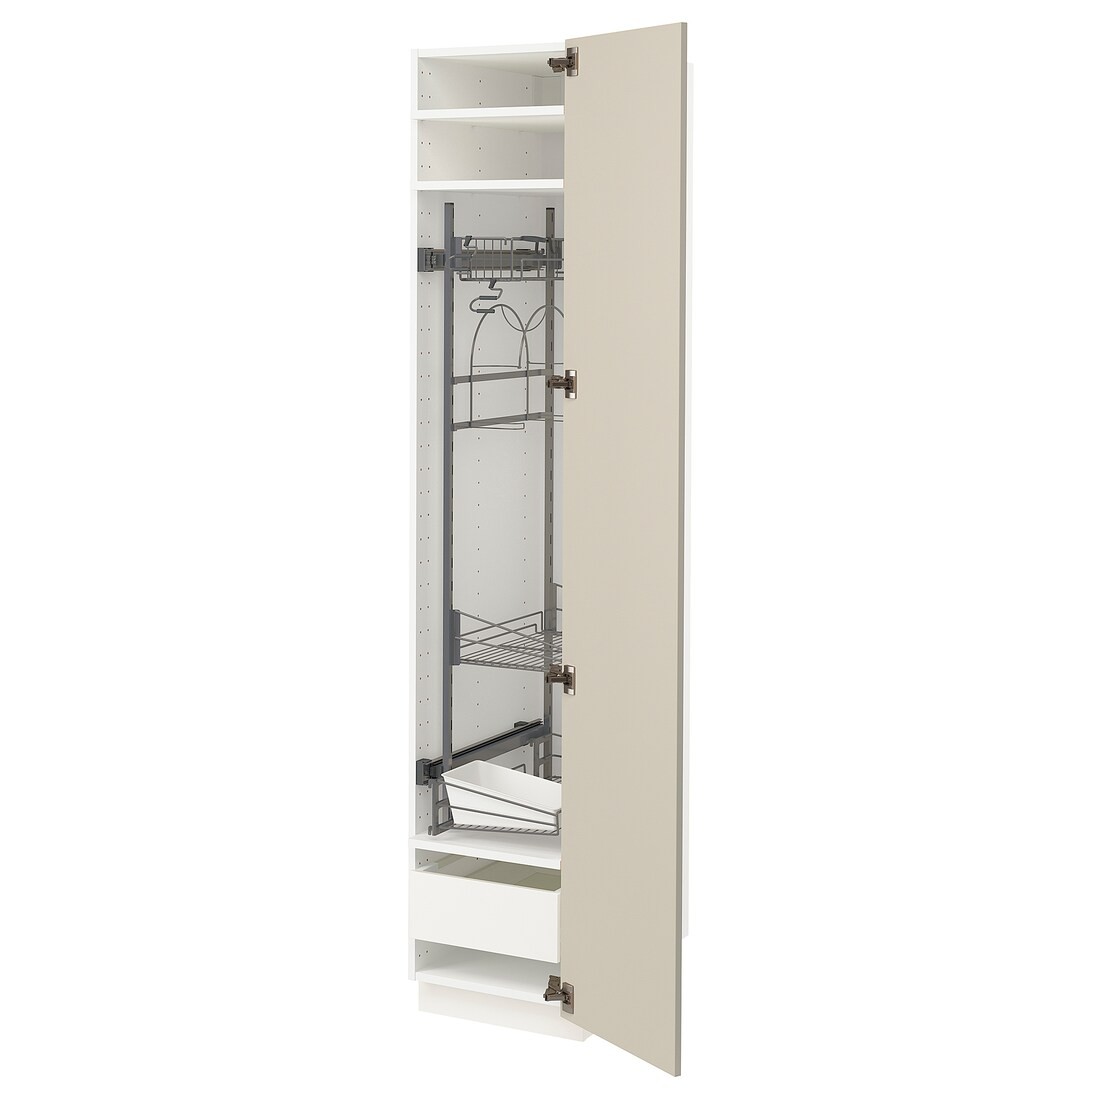 IKEA METOD МЕТОД / MAXIMERA МАКСИМЕРА Высокий шкаф с отделением для аксессуаров для уборки, белый / Havstorp бежевый, 40x60x200 см 49426761 | 494.267.61